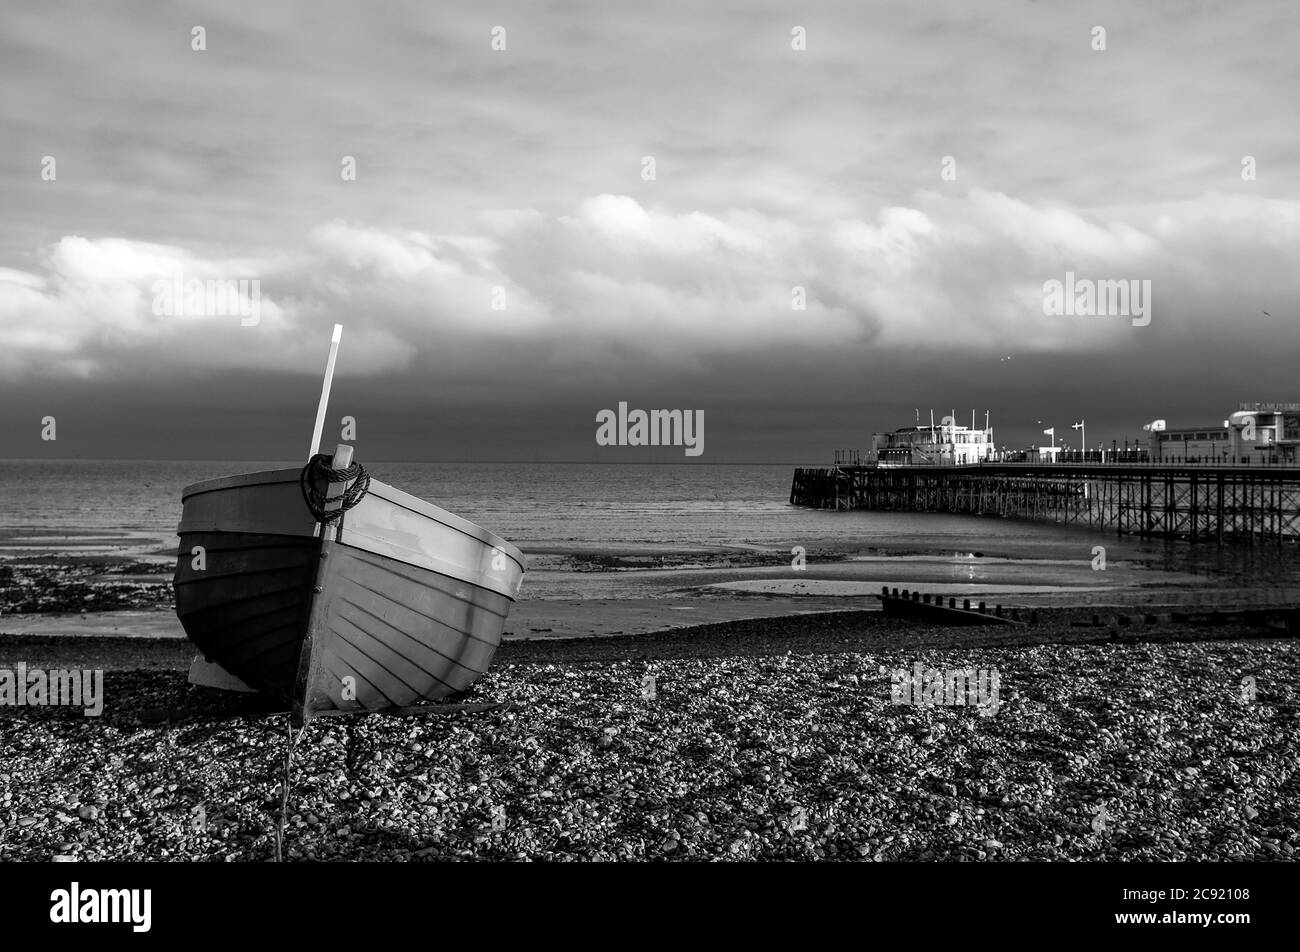 Worthing Seafront West Sussex England UK - bateau de pêche rouge et bleu sur la plage avec Worthing Pier derrière au crépuscule Banque D'Images